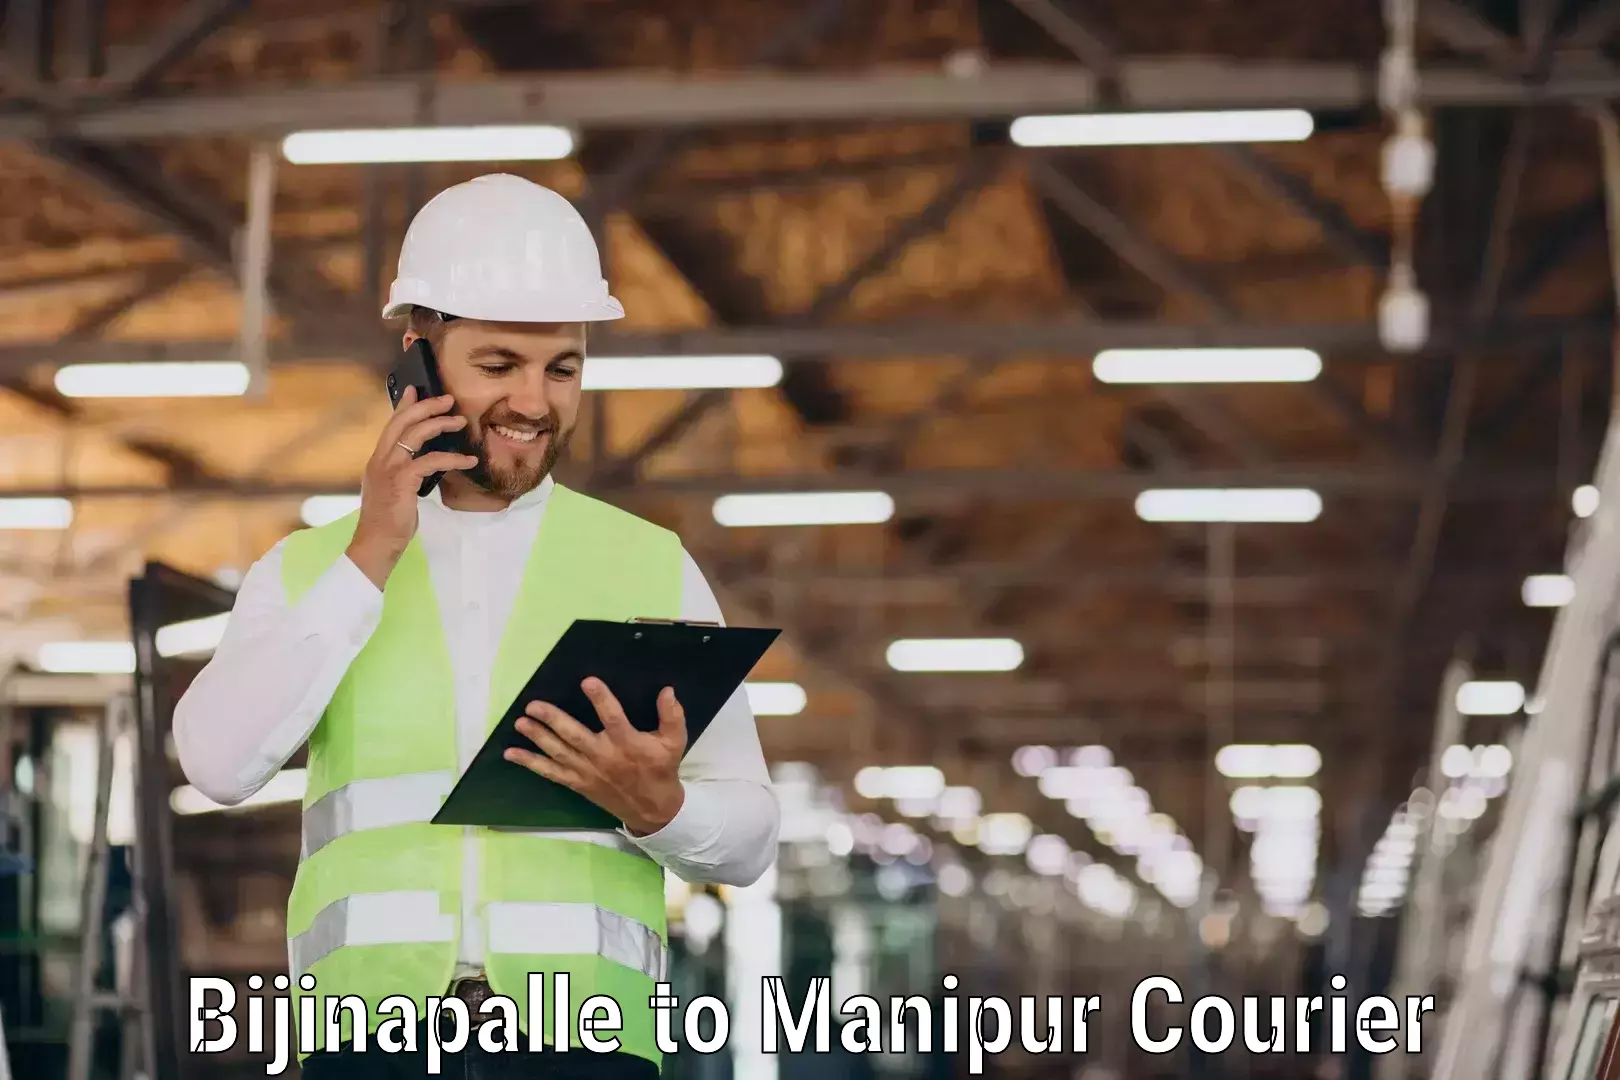 High-speed parcel service Bijinapalle to Manipur